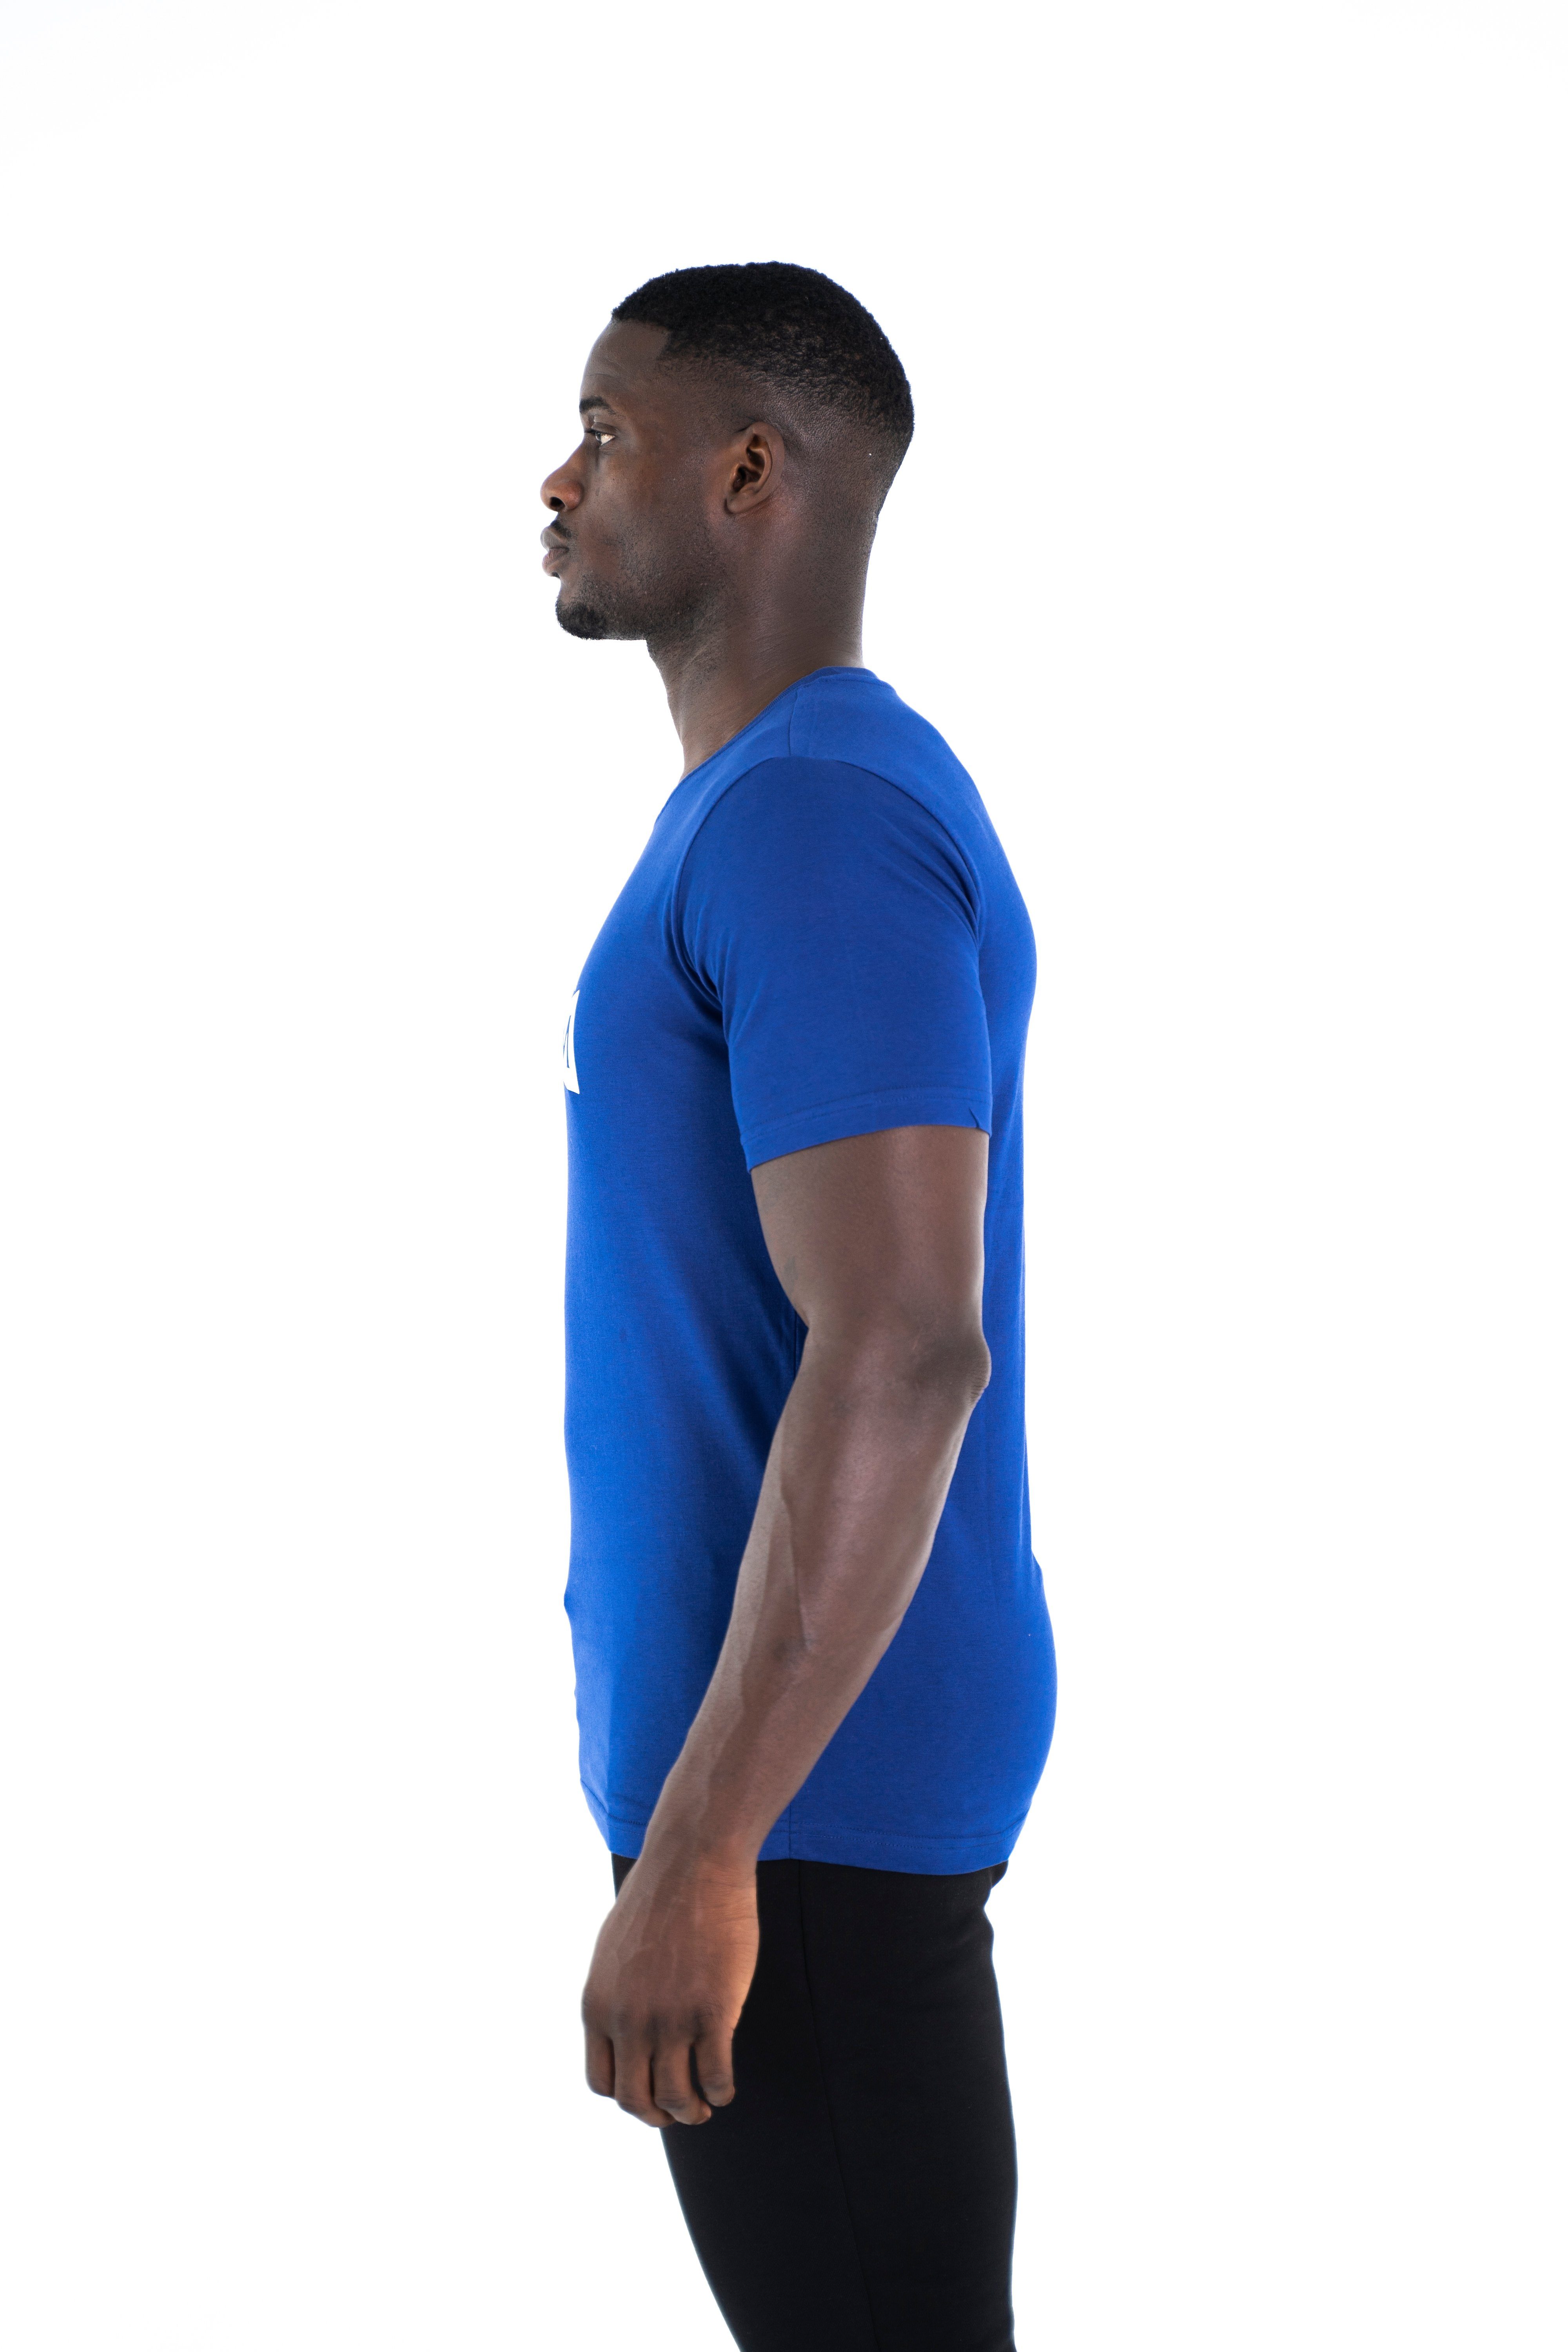 Shirt blau Cotton C-Neck 100% T-Shirt Modern Sportwear Rundhalsausschnitt, Baumwoll Universum